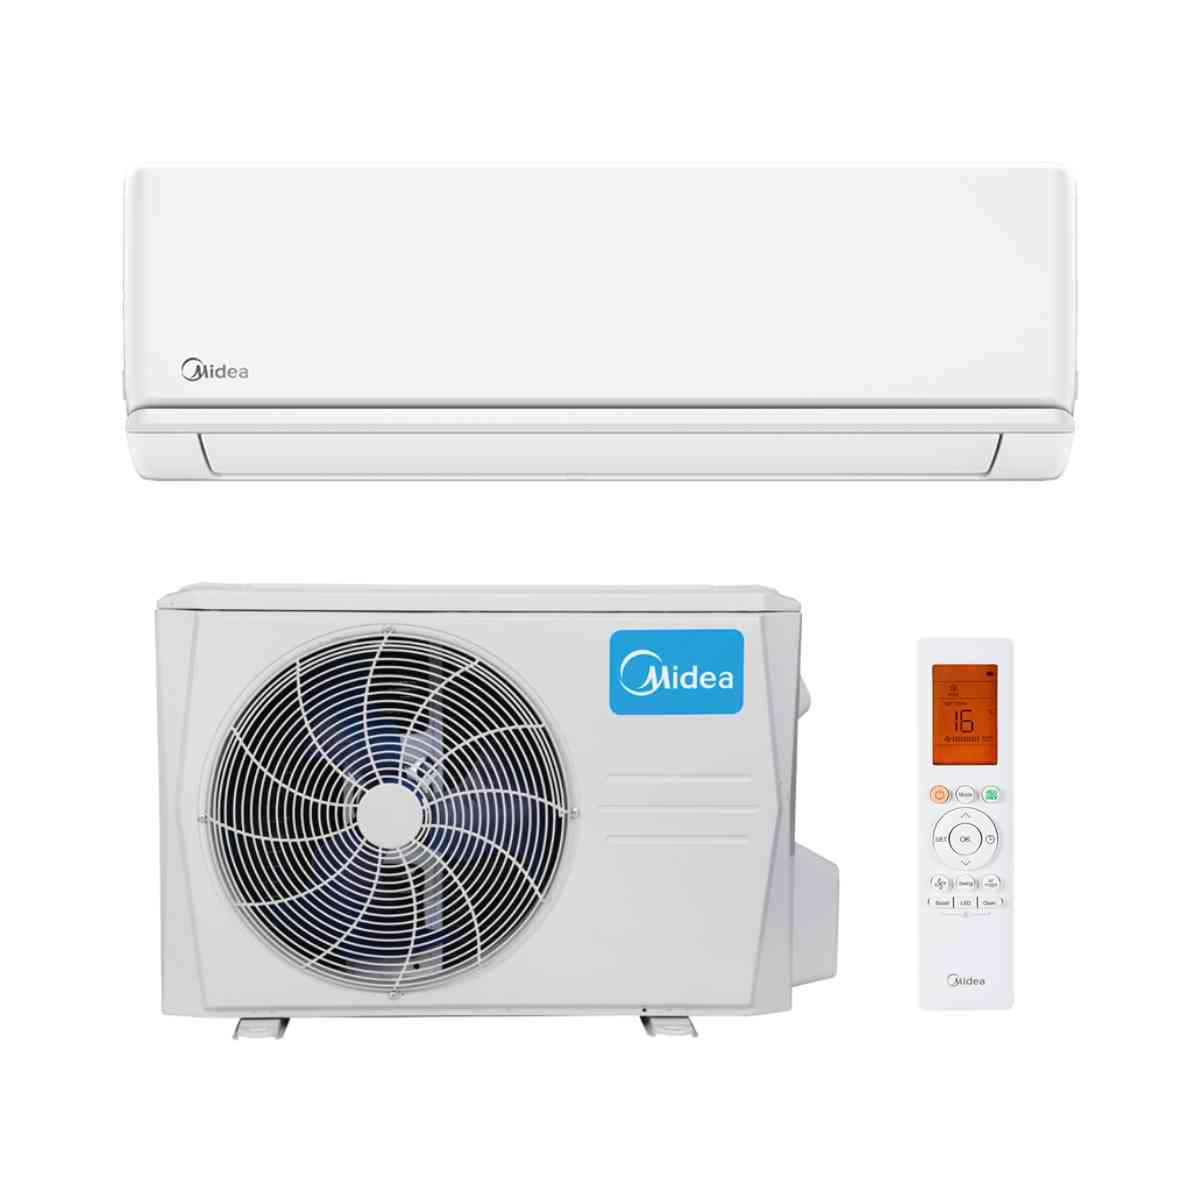 Aire acondicionado split Midea Blanc 2.0 2.236 frigorías con referencia 13950442 de la marca MIDEA